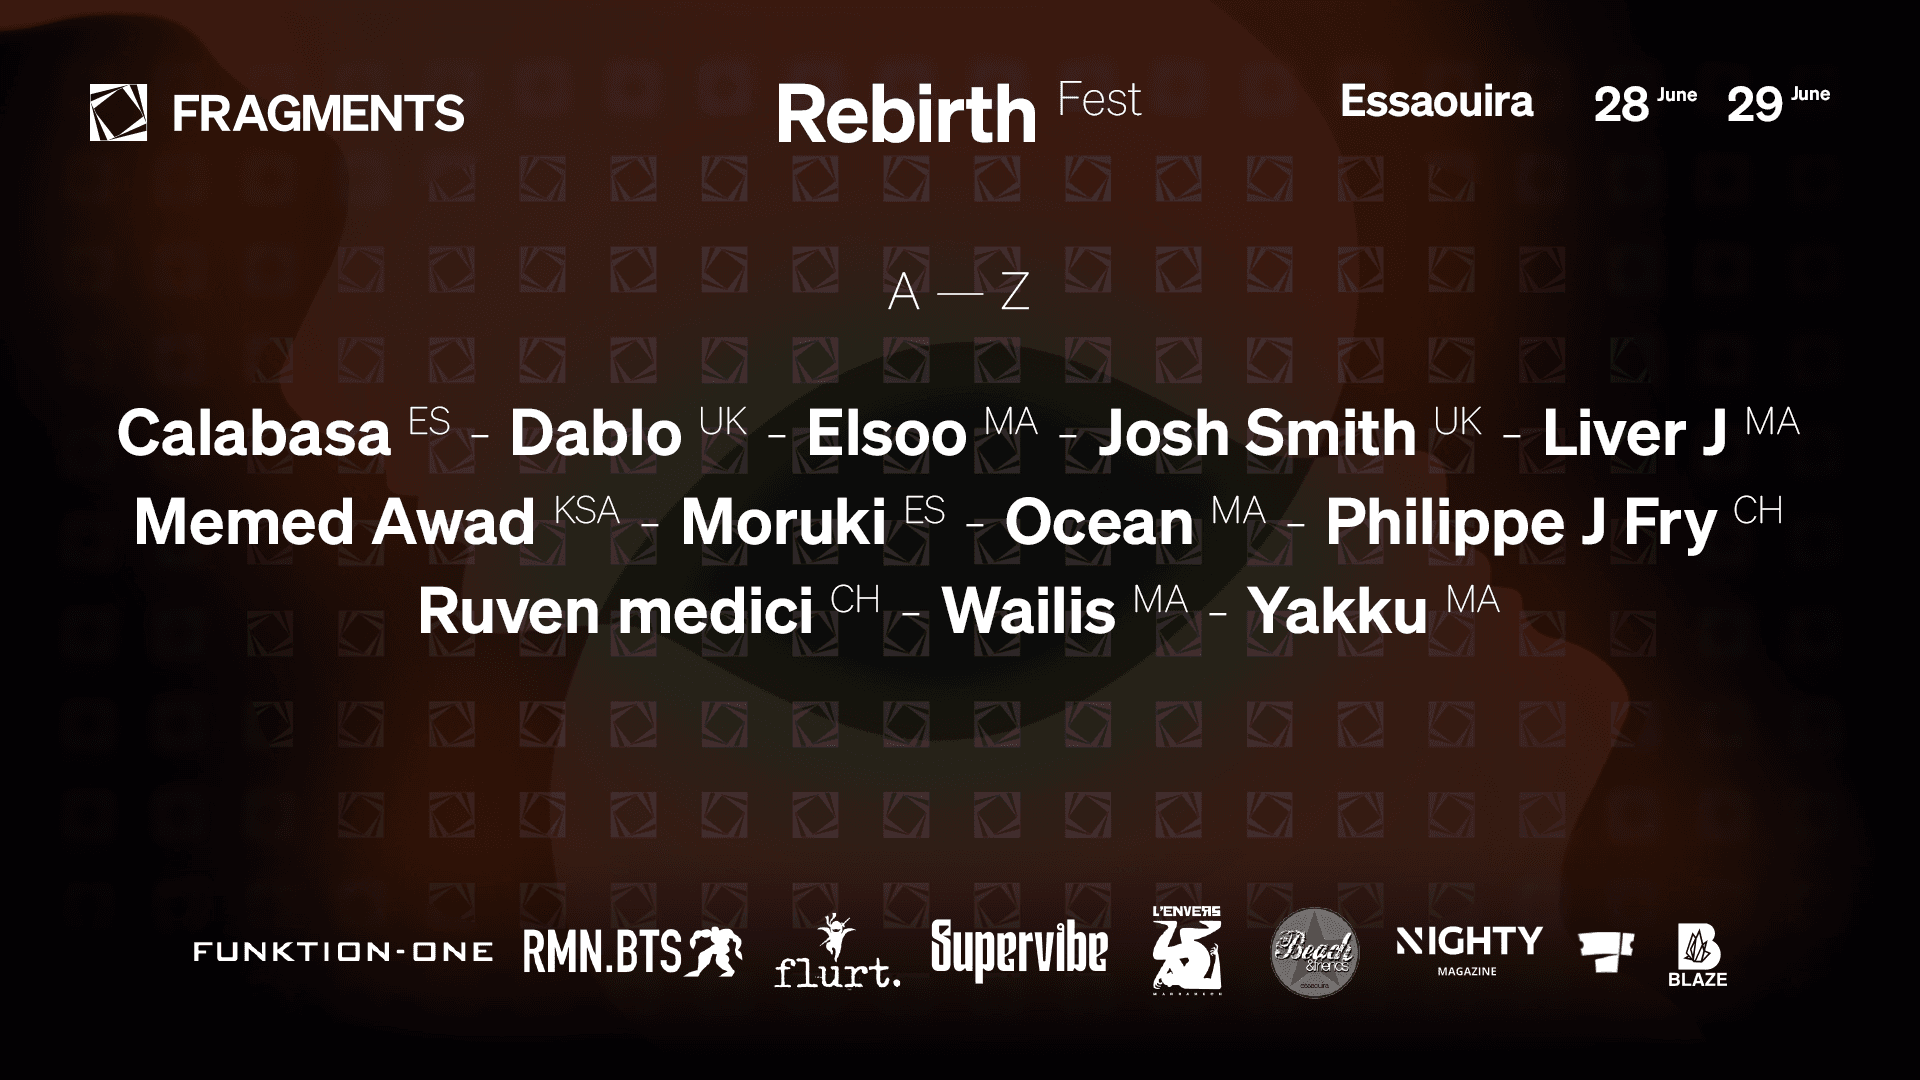 The Rebirth Fest